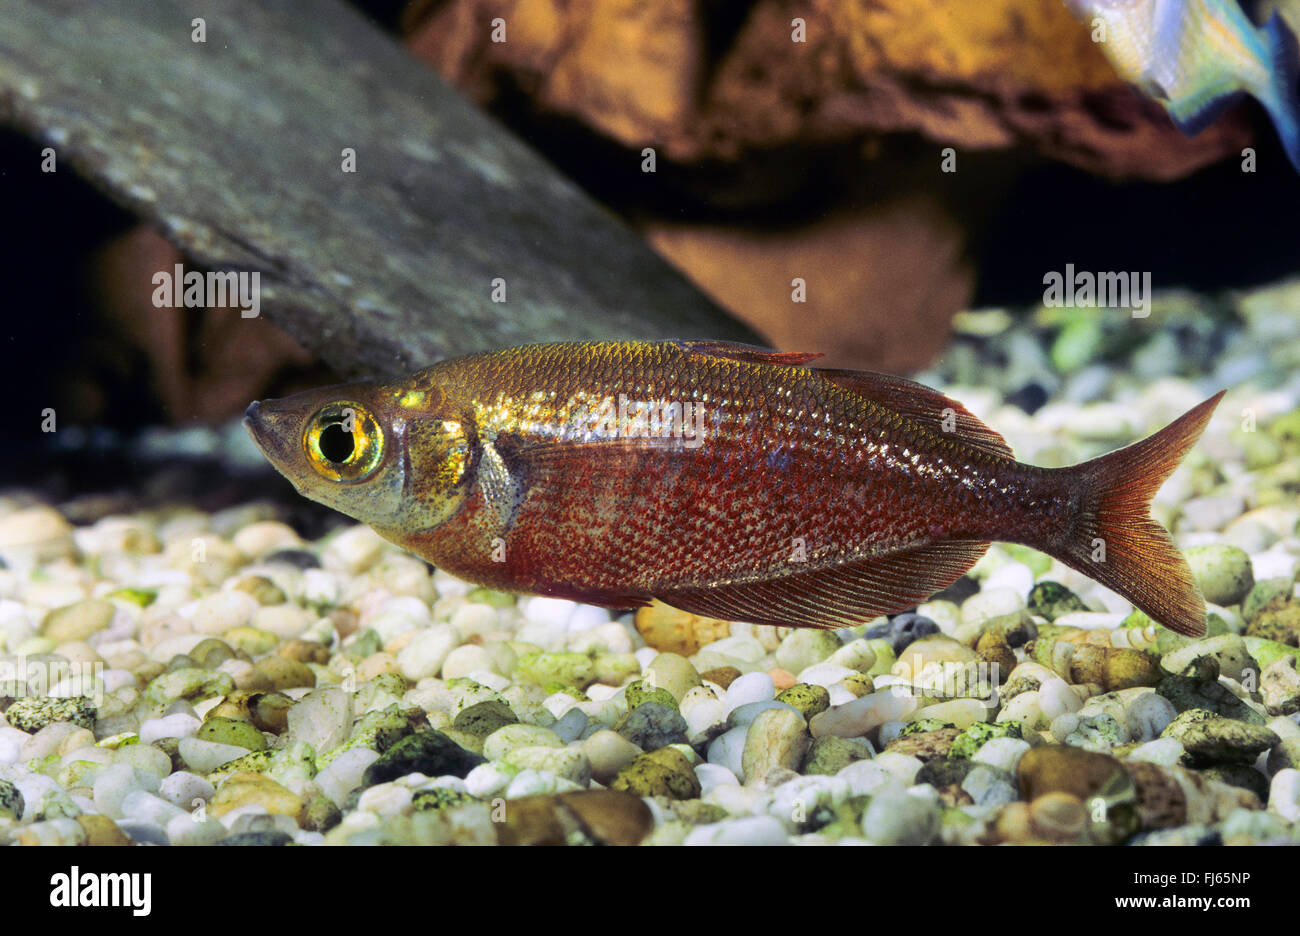 Red rainbowfish, Salmon-red rainbowfish, New Guinea Red Irian Rainbowfish (Glossolepis incisus), at the bottom Stock Photo